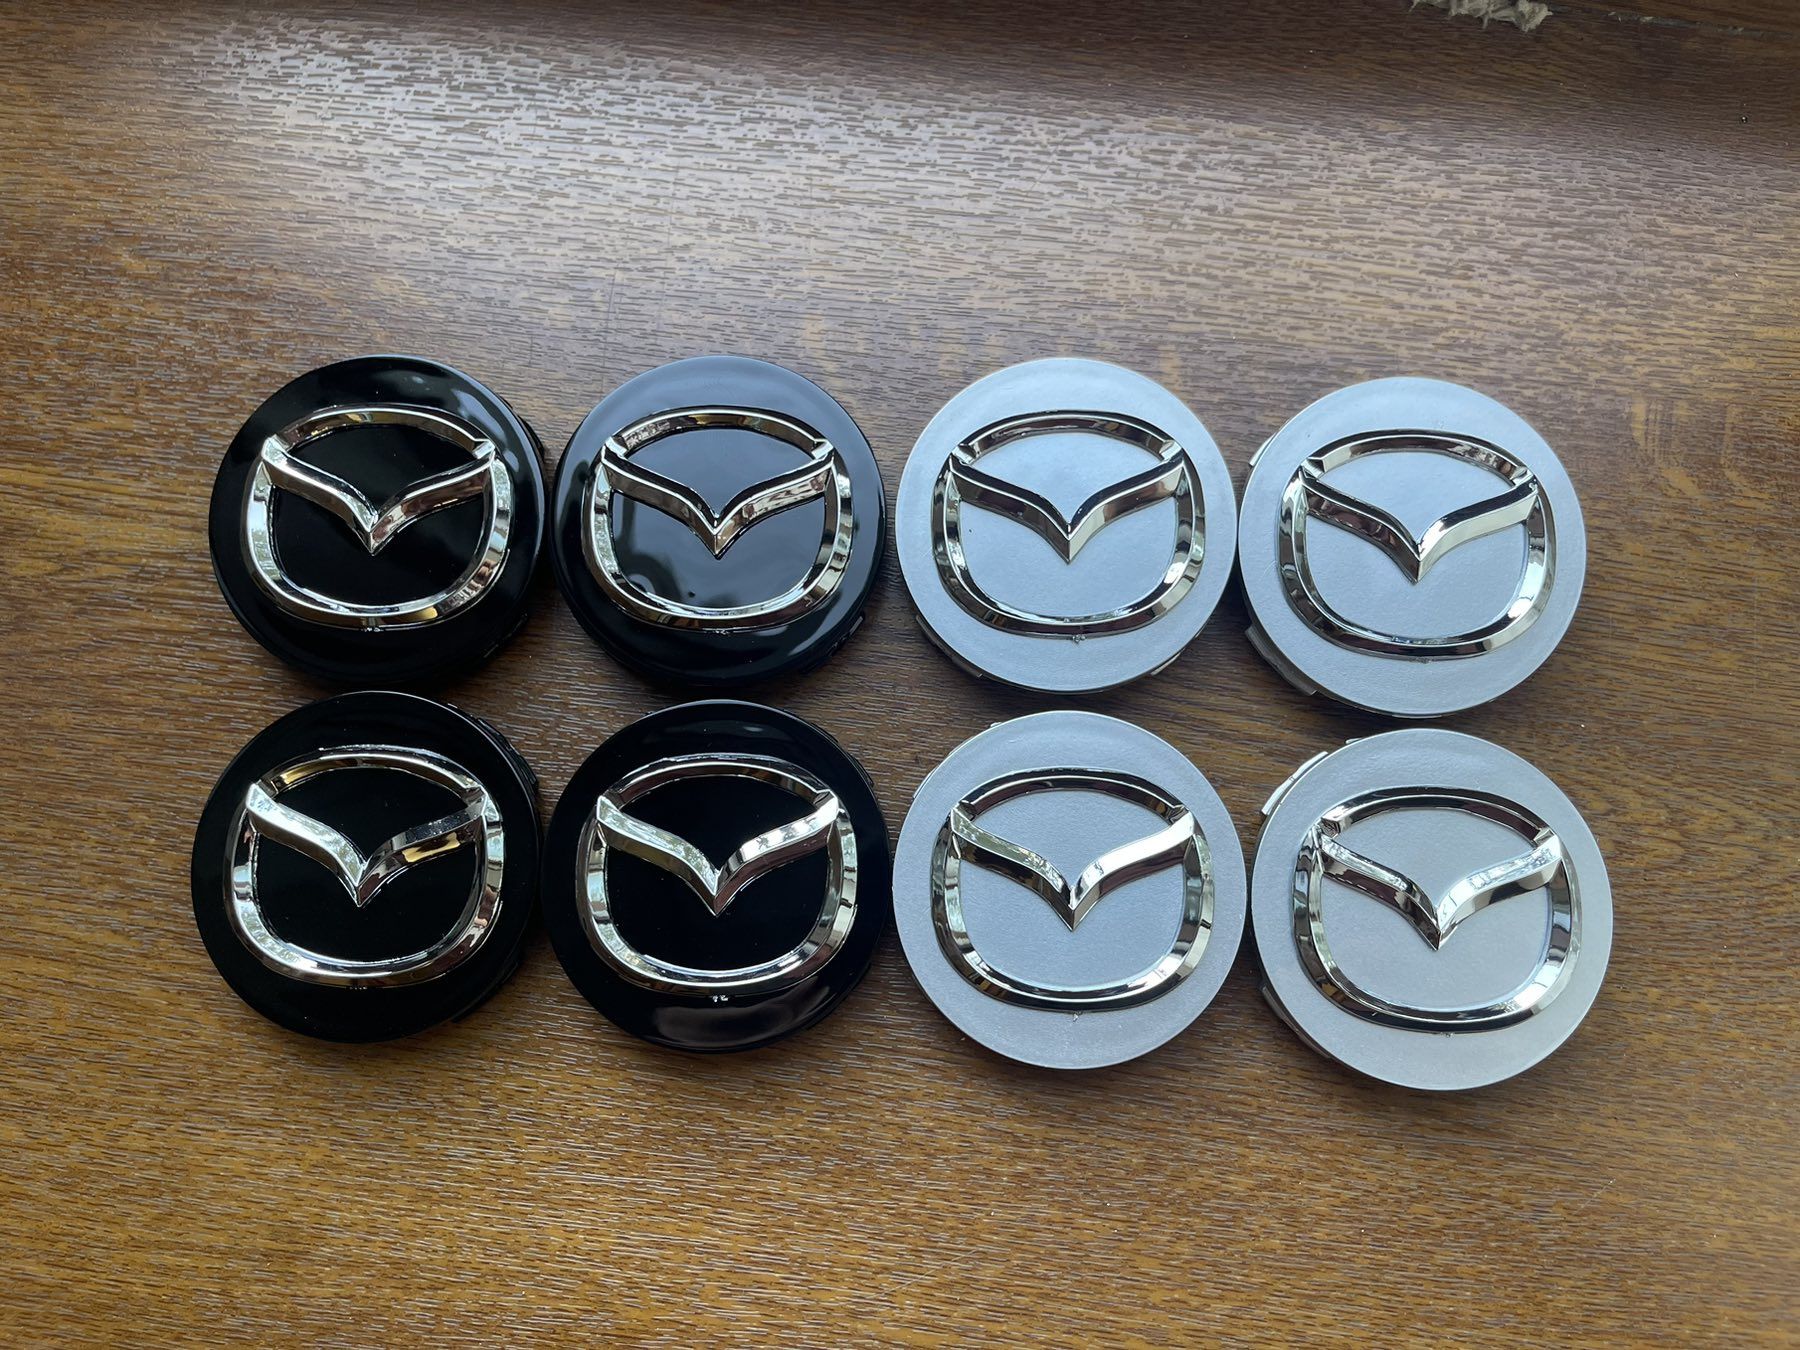 Колпачки Мазда Mazda декоративные заглушки на диски колпаки